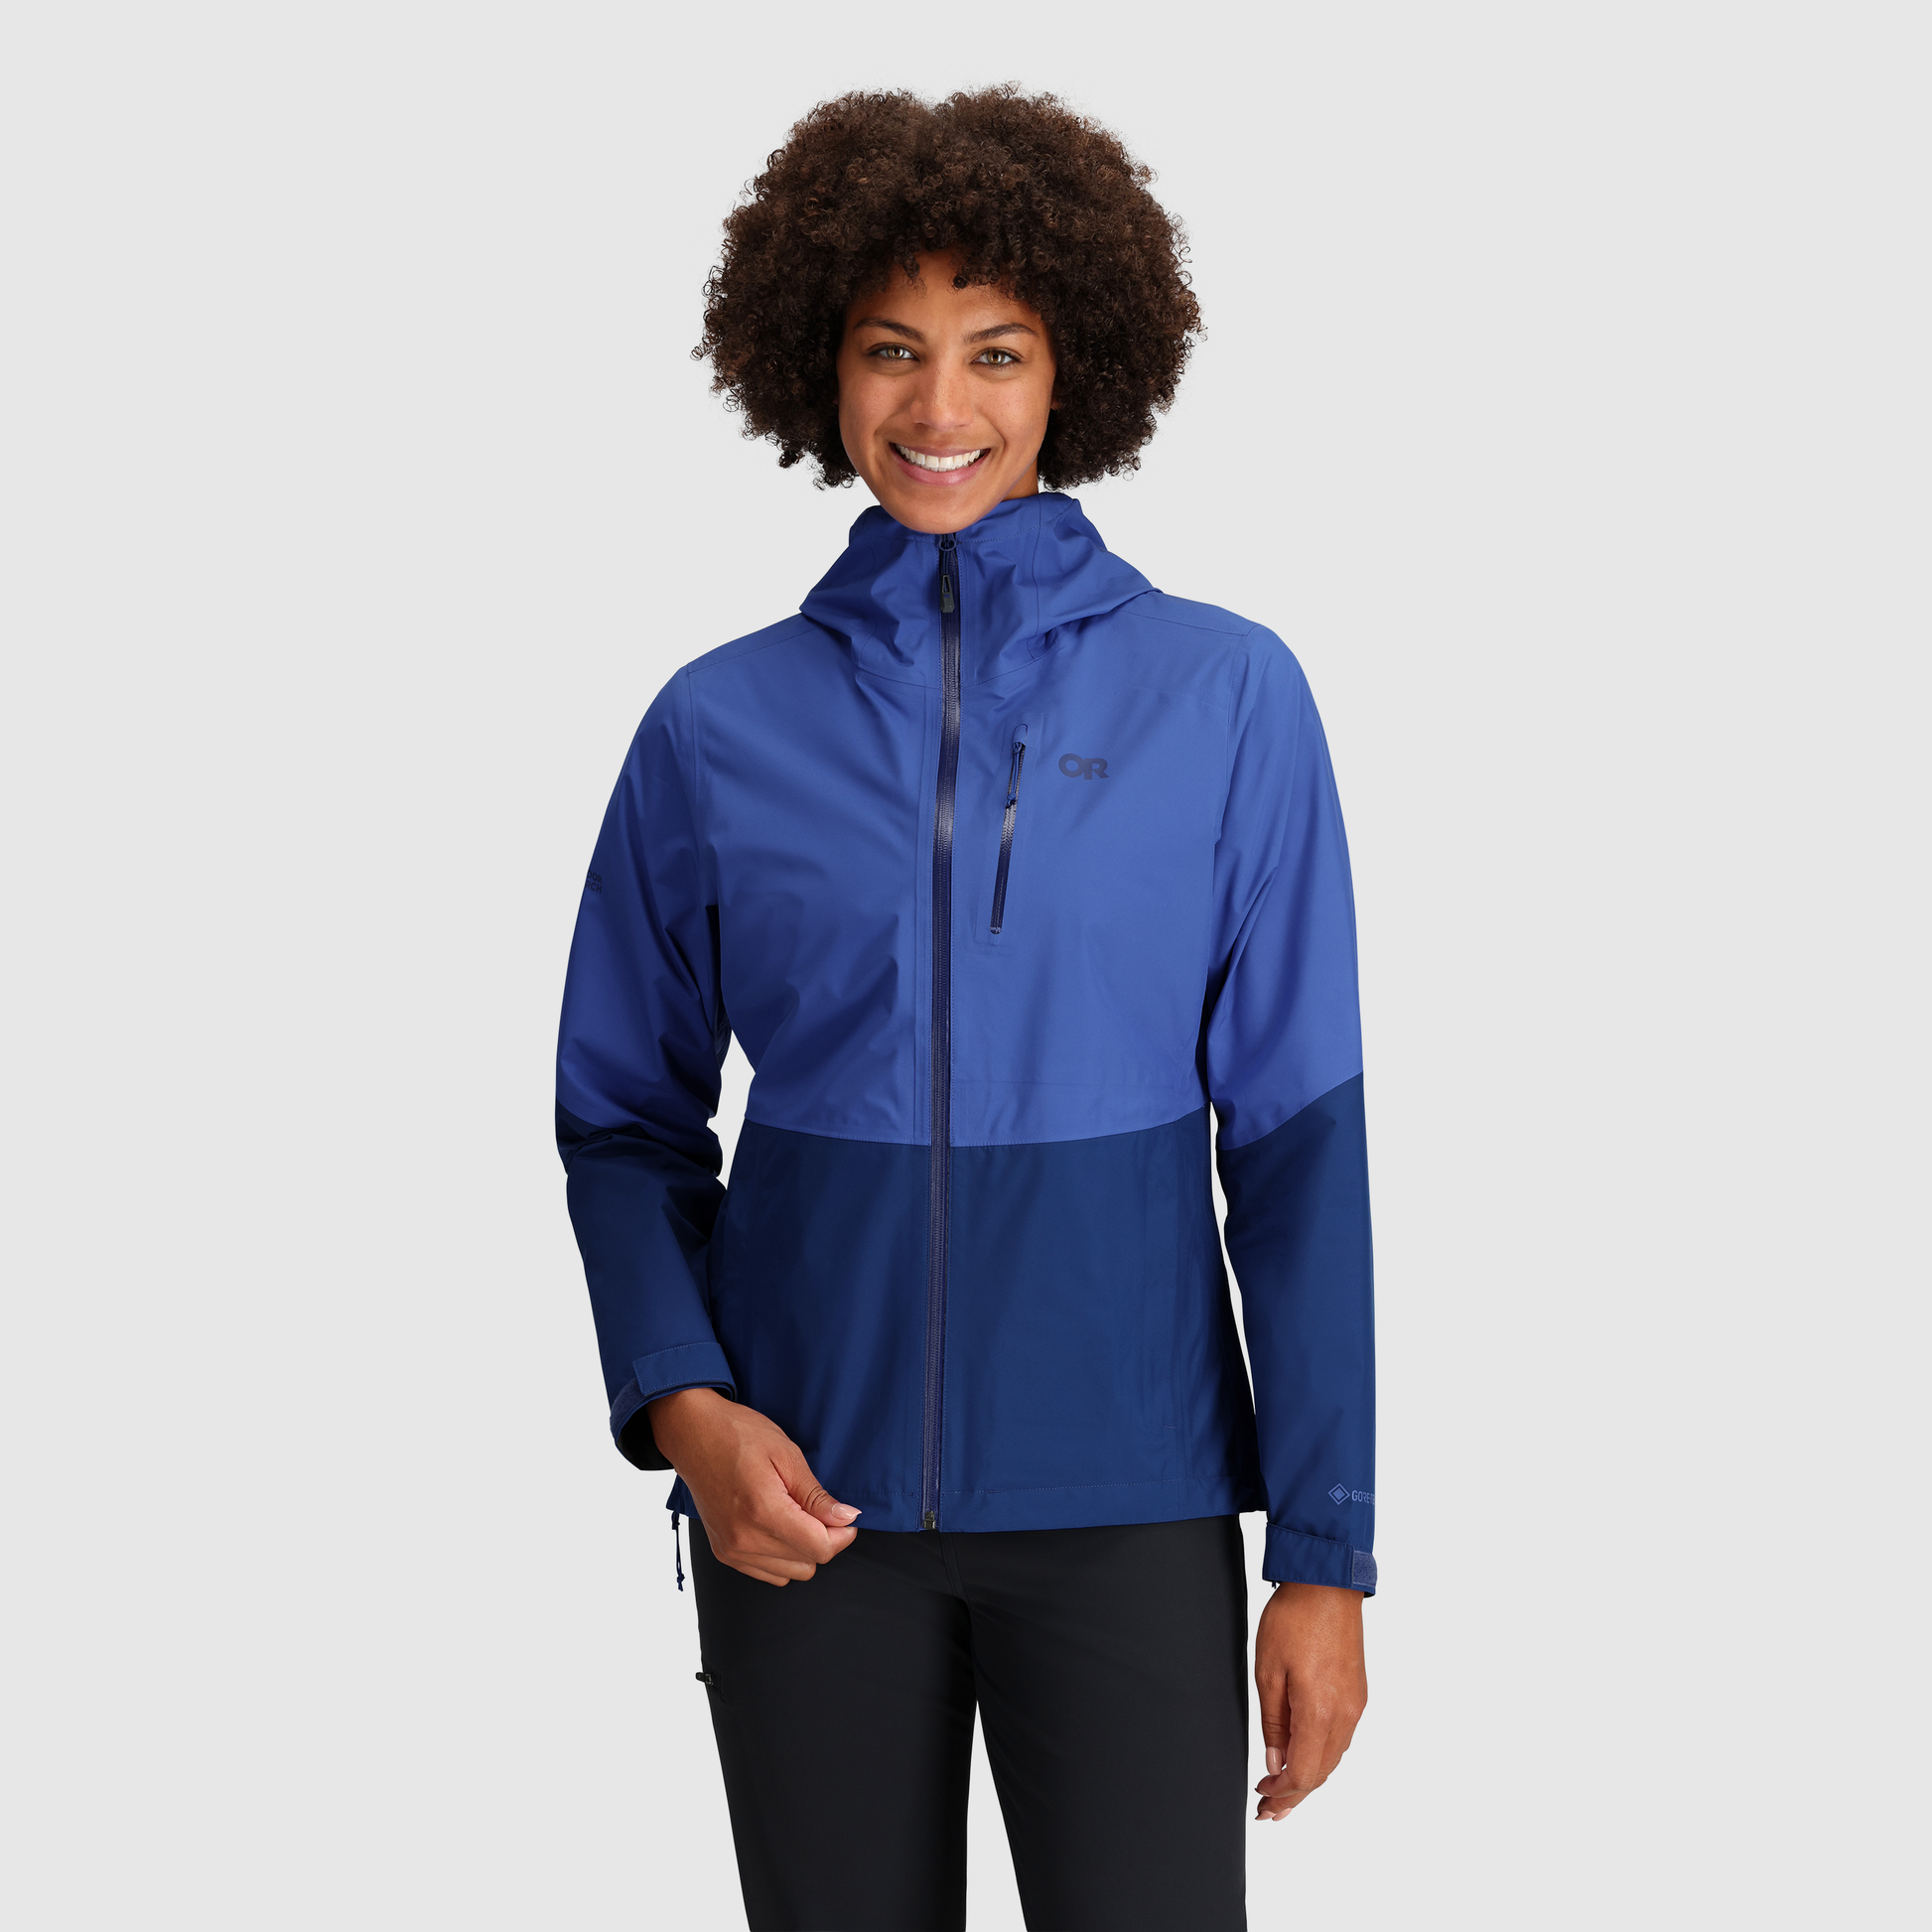 Women's Aspire GORE-TEX® Jacket | Outdoor Research